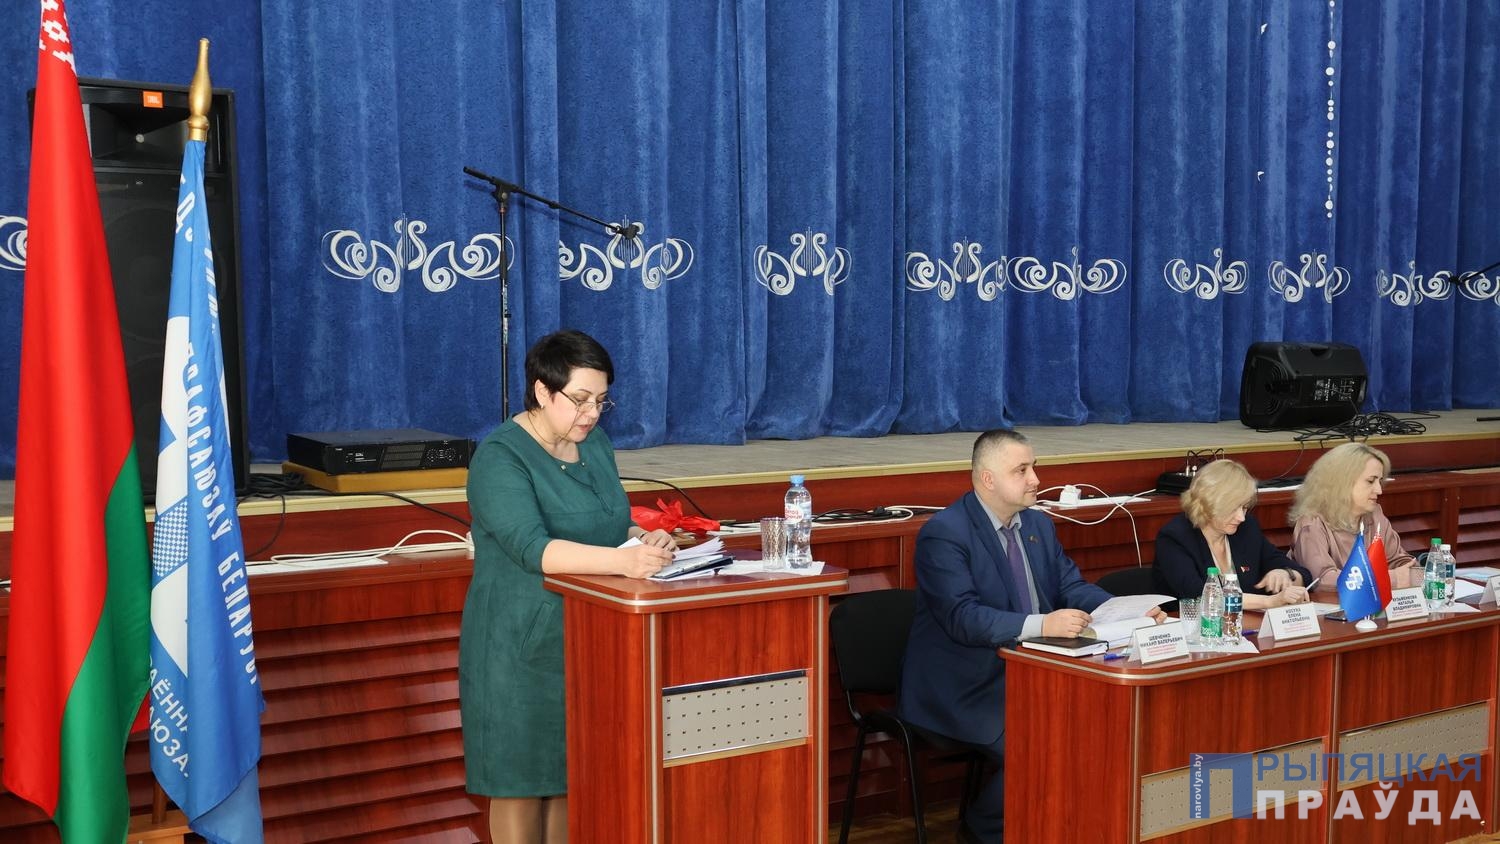 В Наровле состоялось заседание совета районного объединения профсоюзов